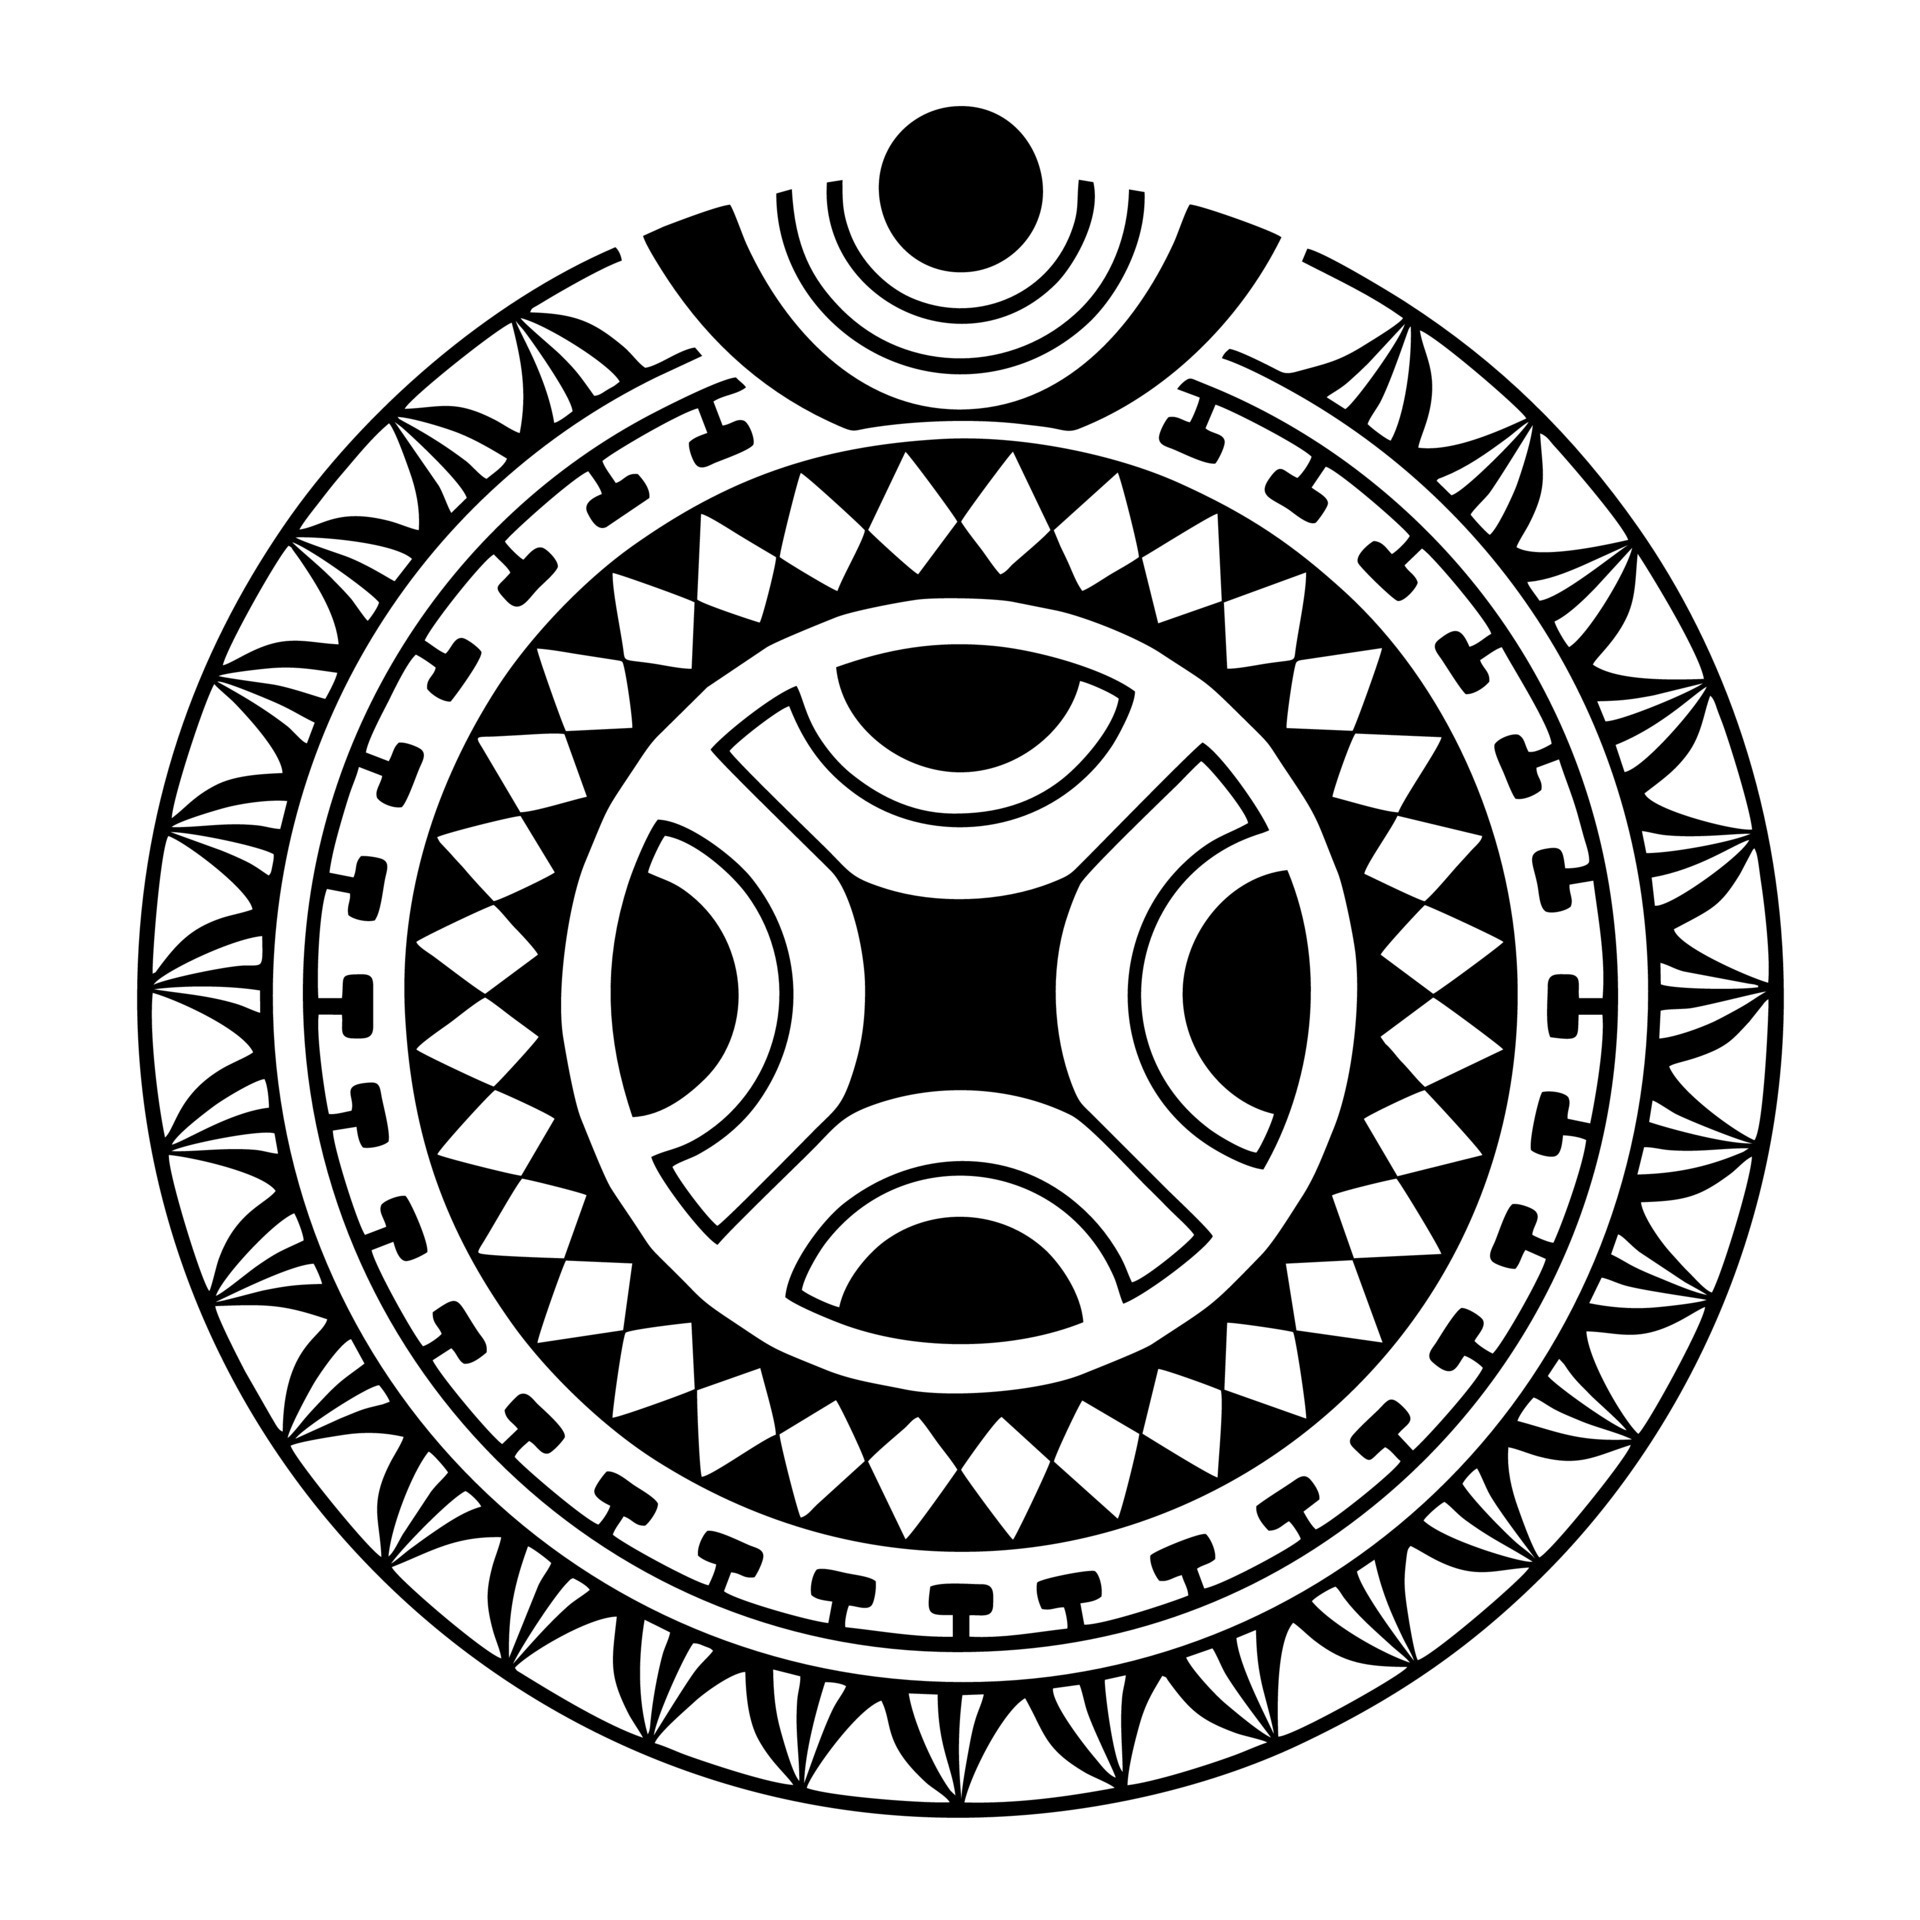 Share more than 80 māori tattoo designs super hot - in.coedo.com.vn